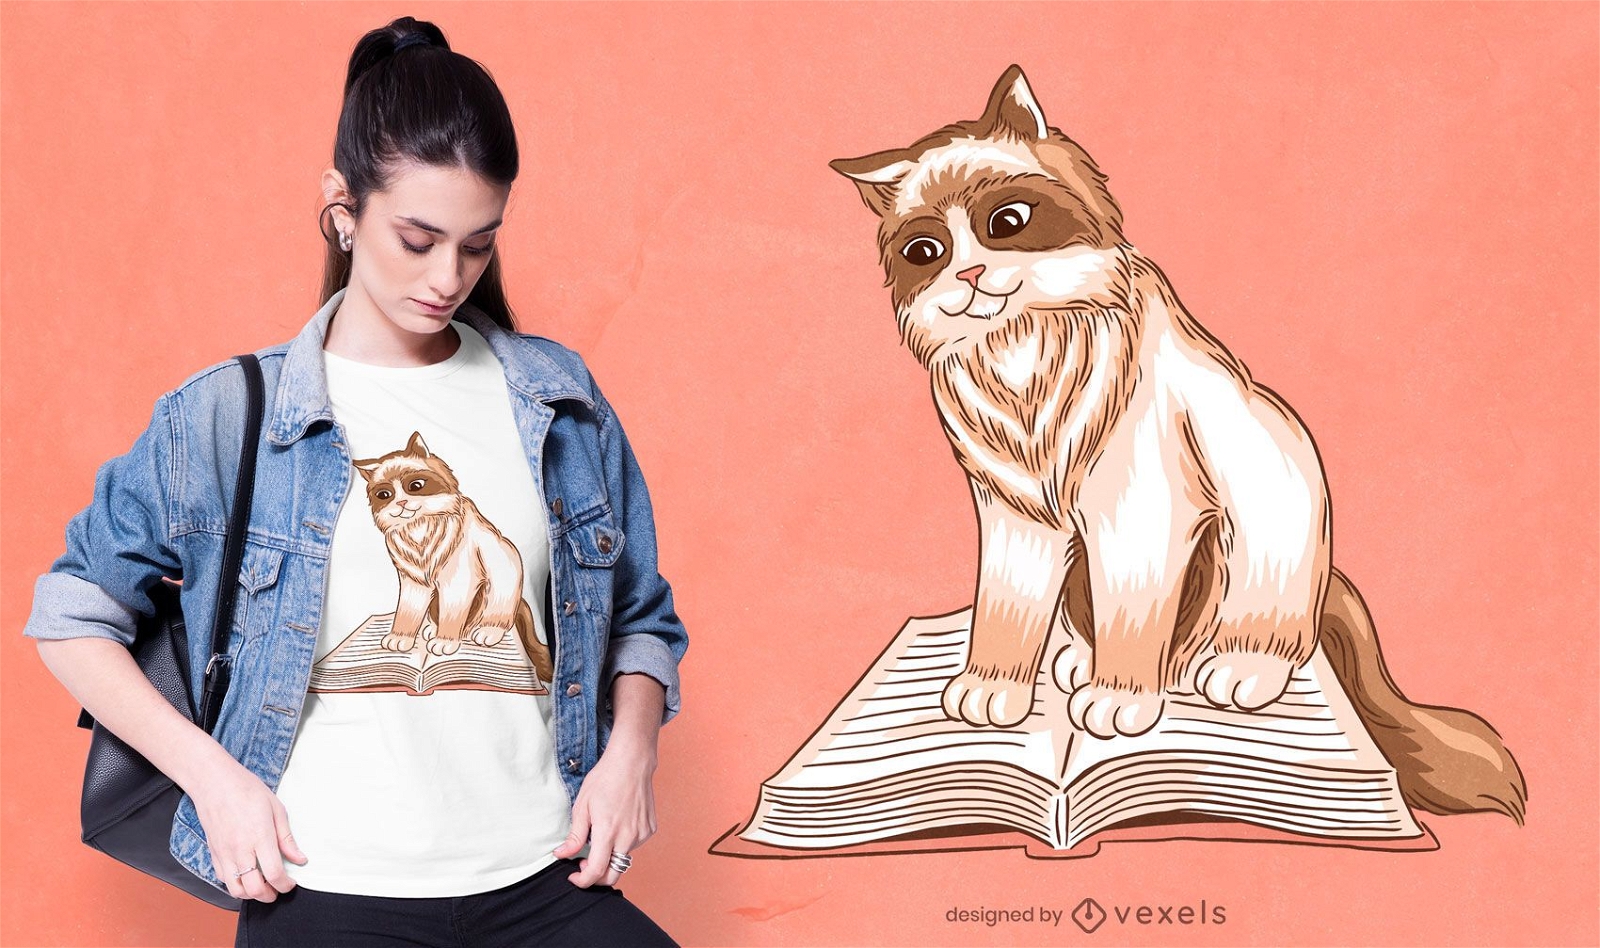 Gato animal leyendo un dise?o de camiseta de libro.